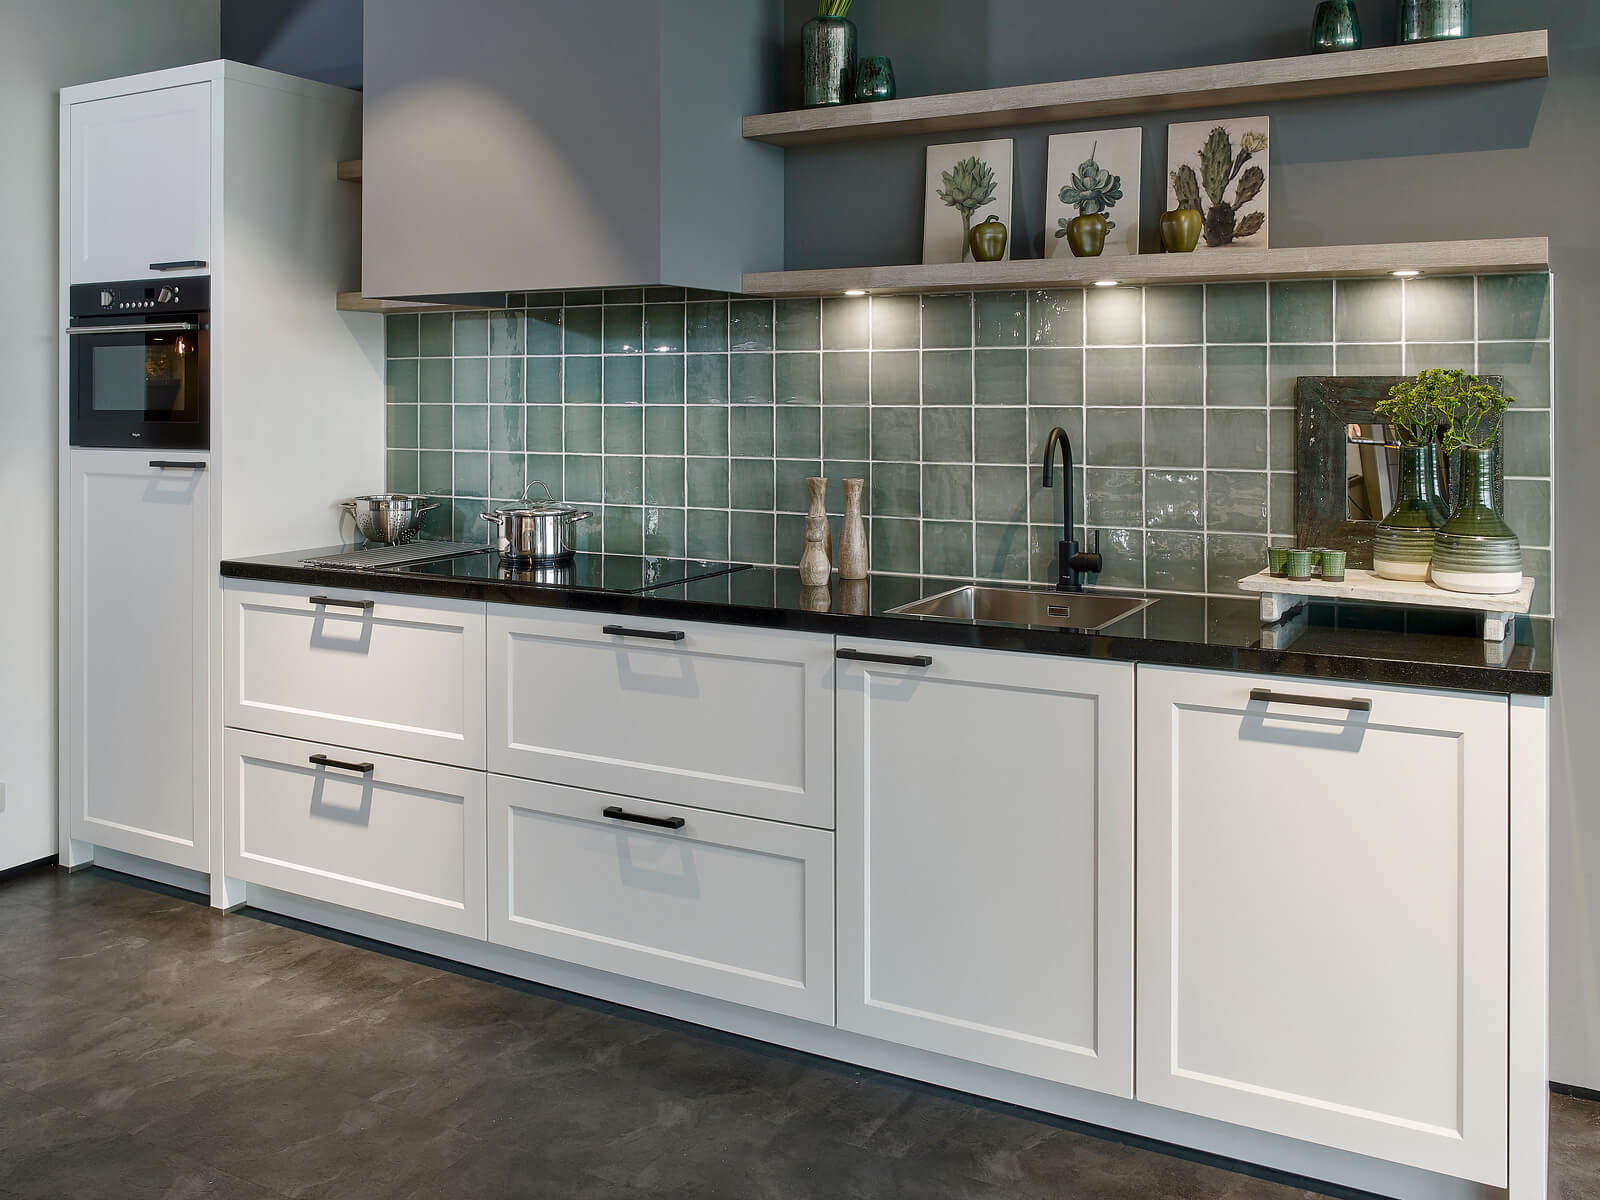 Intact koolstof Afdrukken Witte keuken met zwart blad: 3 redenen om hiervoor te kiezen - Tieleman  Keukens